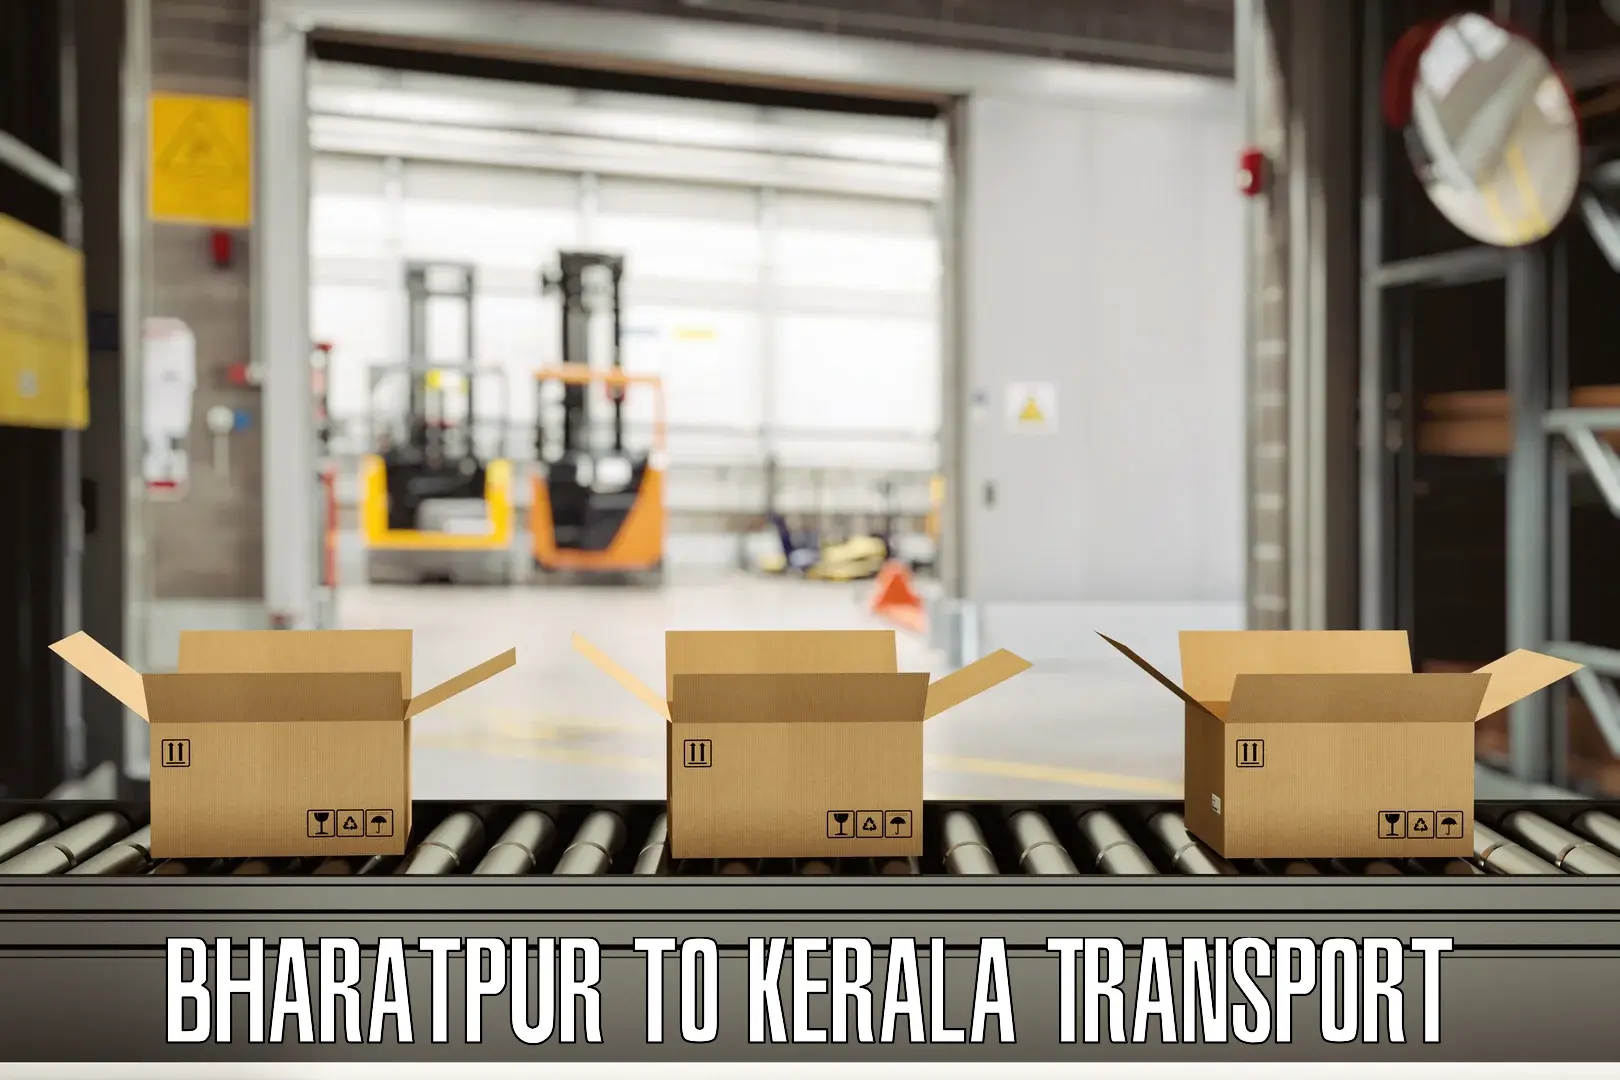 Furniture transport service Bharatpur to Manthuka